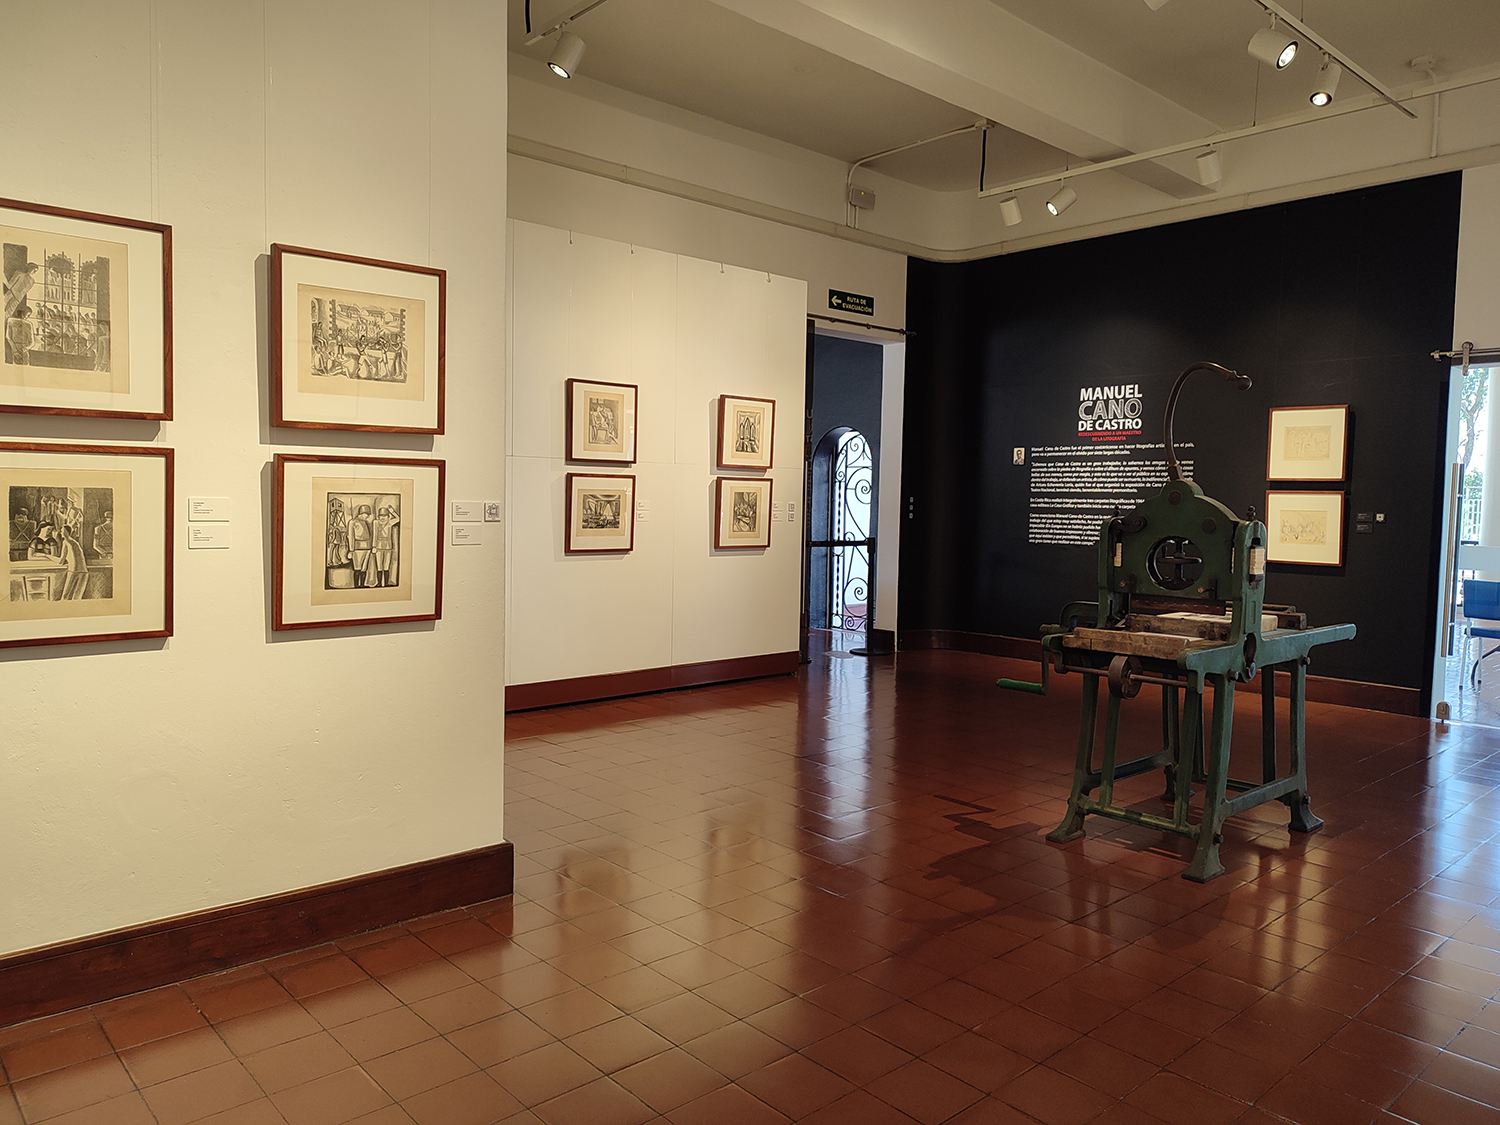 Sala con obras de arte y prensa litográfica